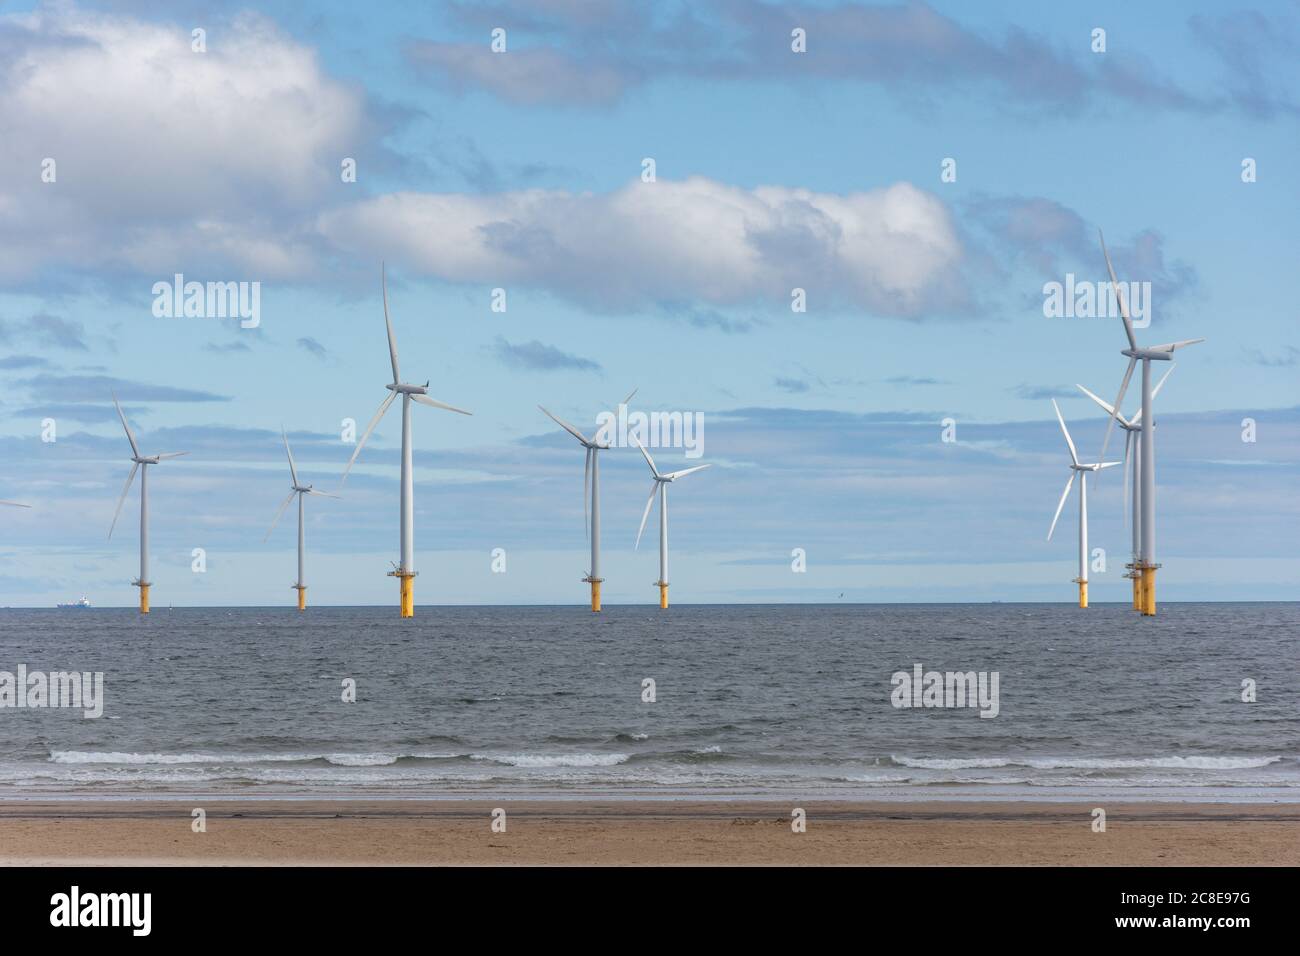 Éoliennes offshore de la plage, Redcar, North Yorkshire, Angleterre, Royaume-Uni Banque D'Images